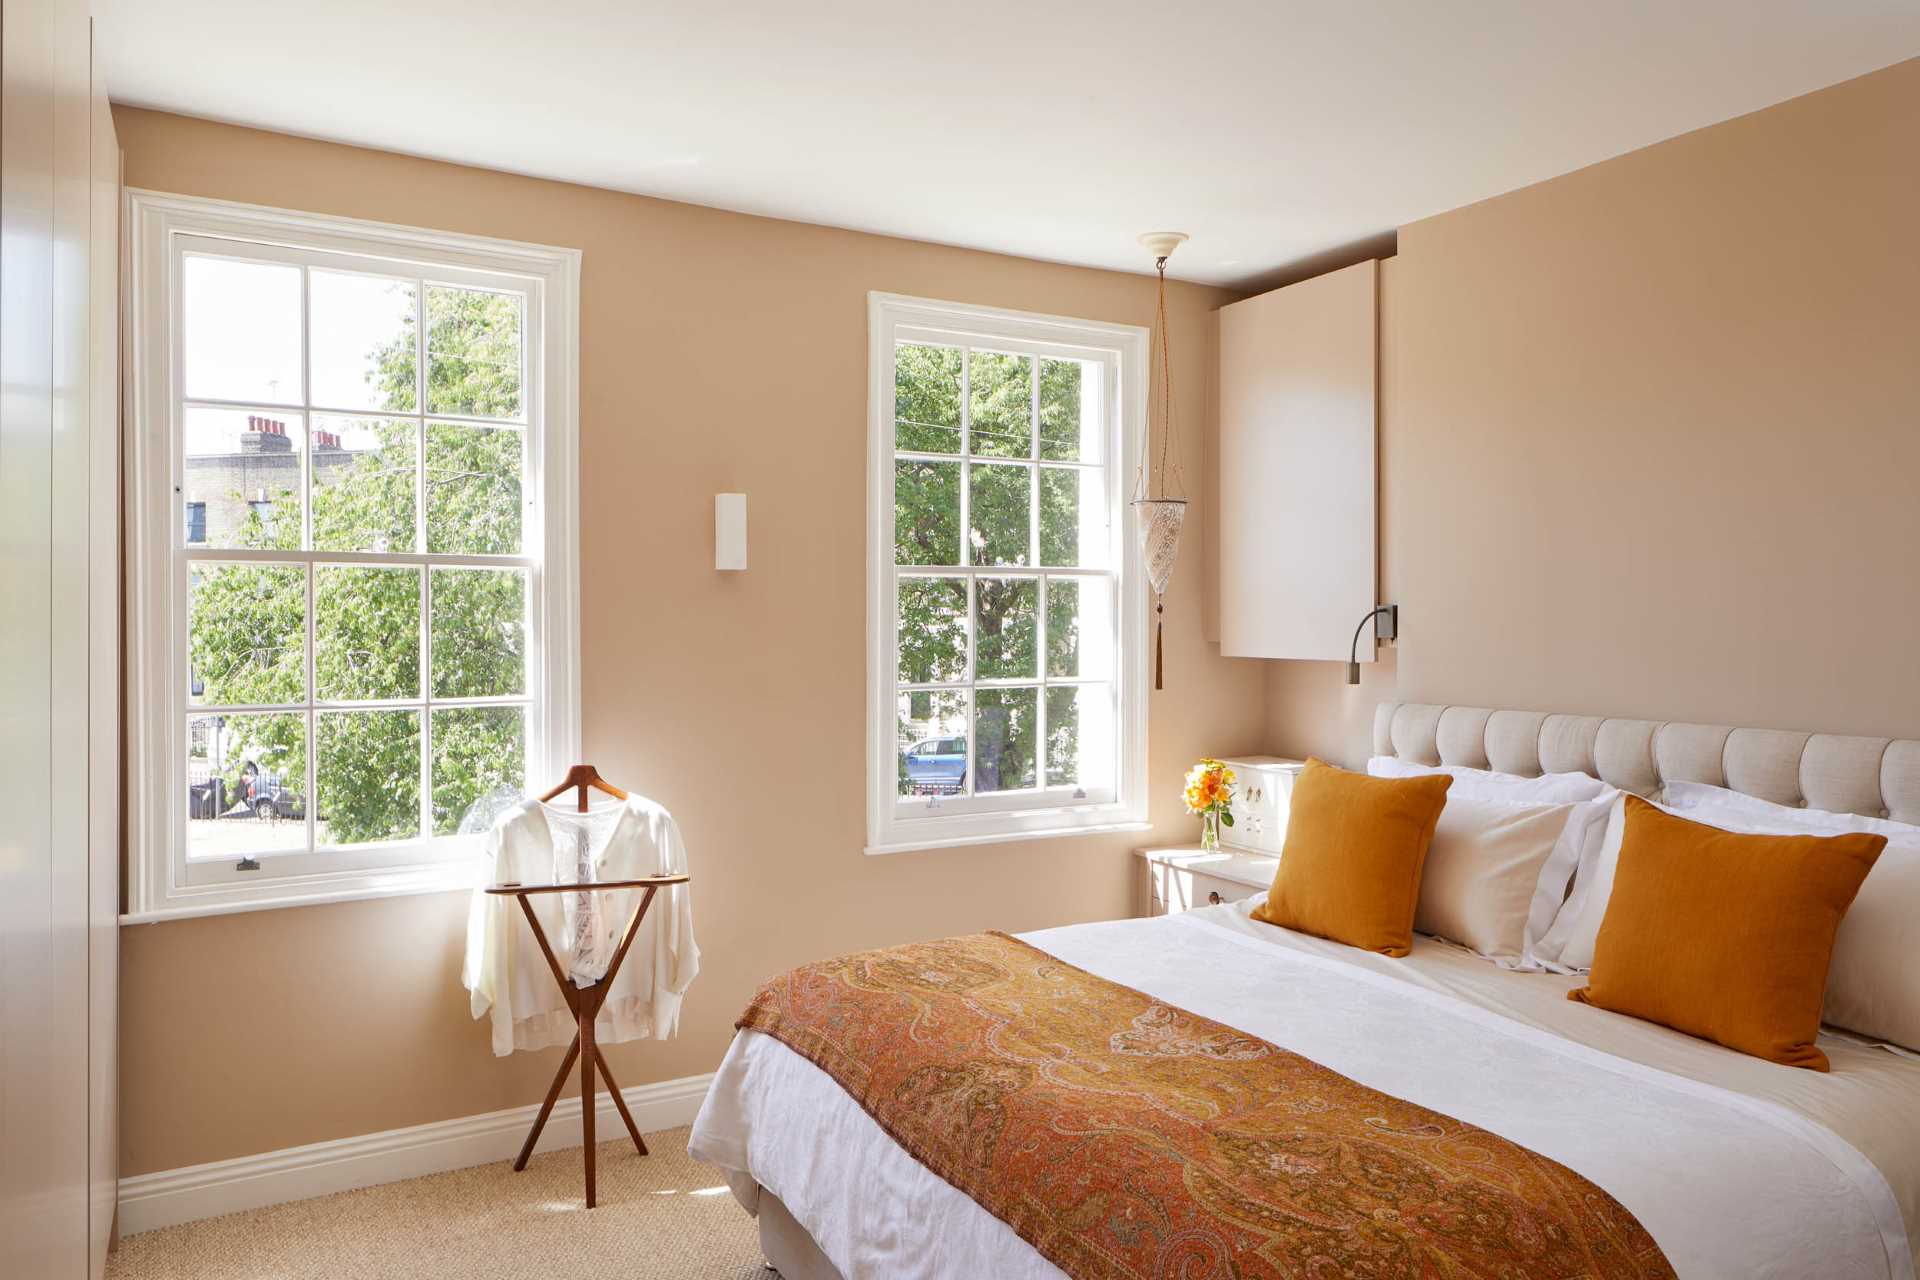 در این اتاق خواب یک جفت پنجره ارسی 6 جداره نمای درختان و خیابان را فراهم می کند.